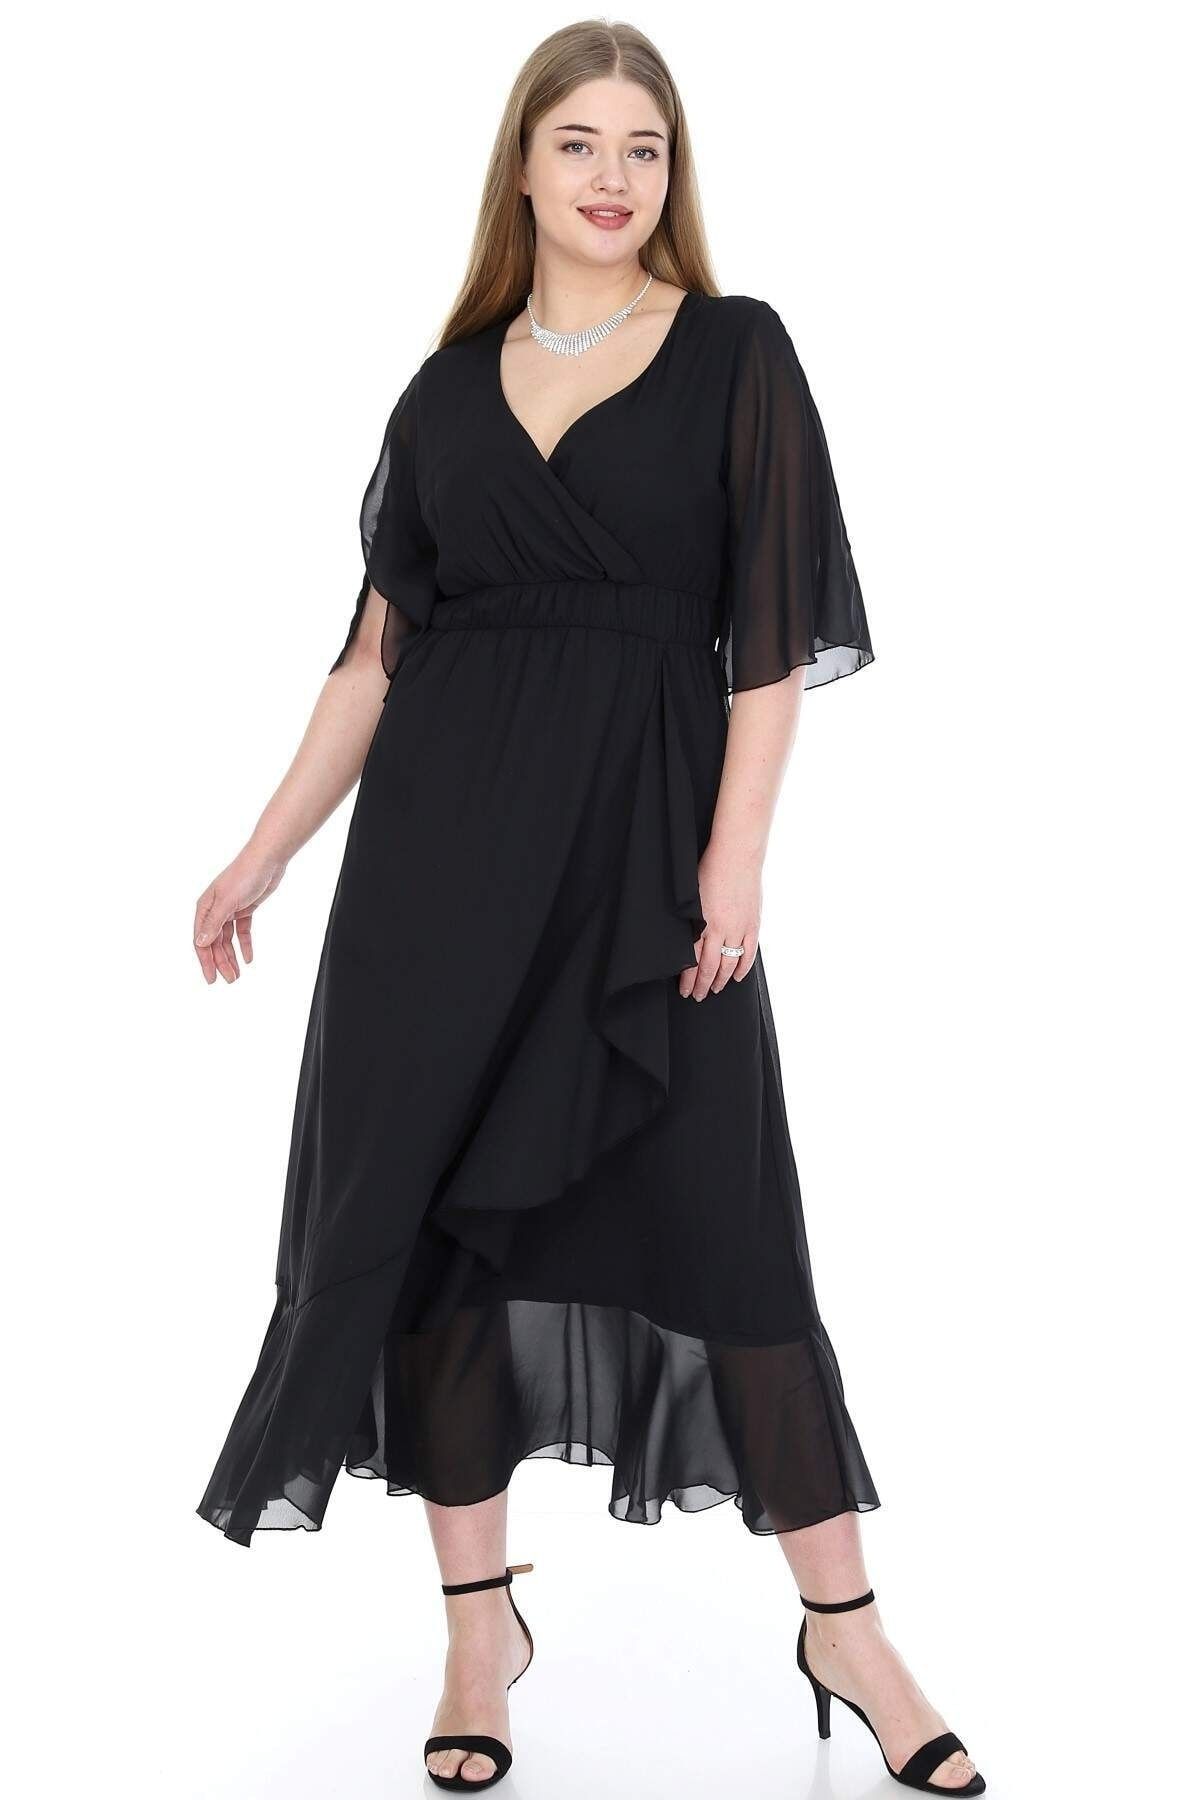 Angelino Kadın Siyah Şifon Uzun Elbise KL8020